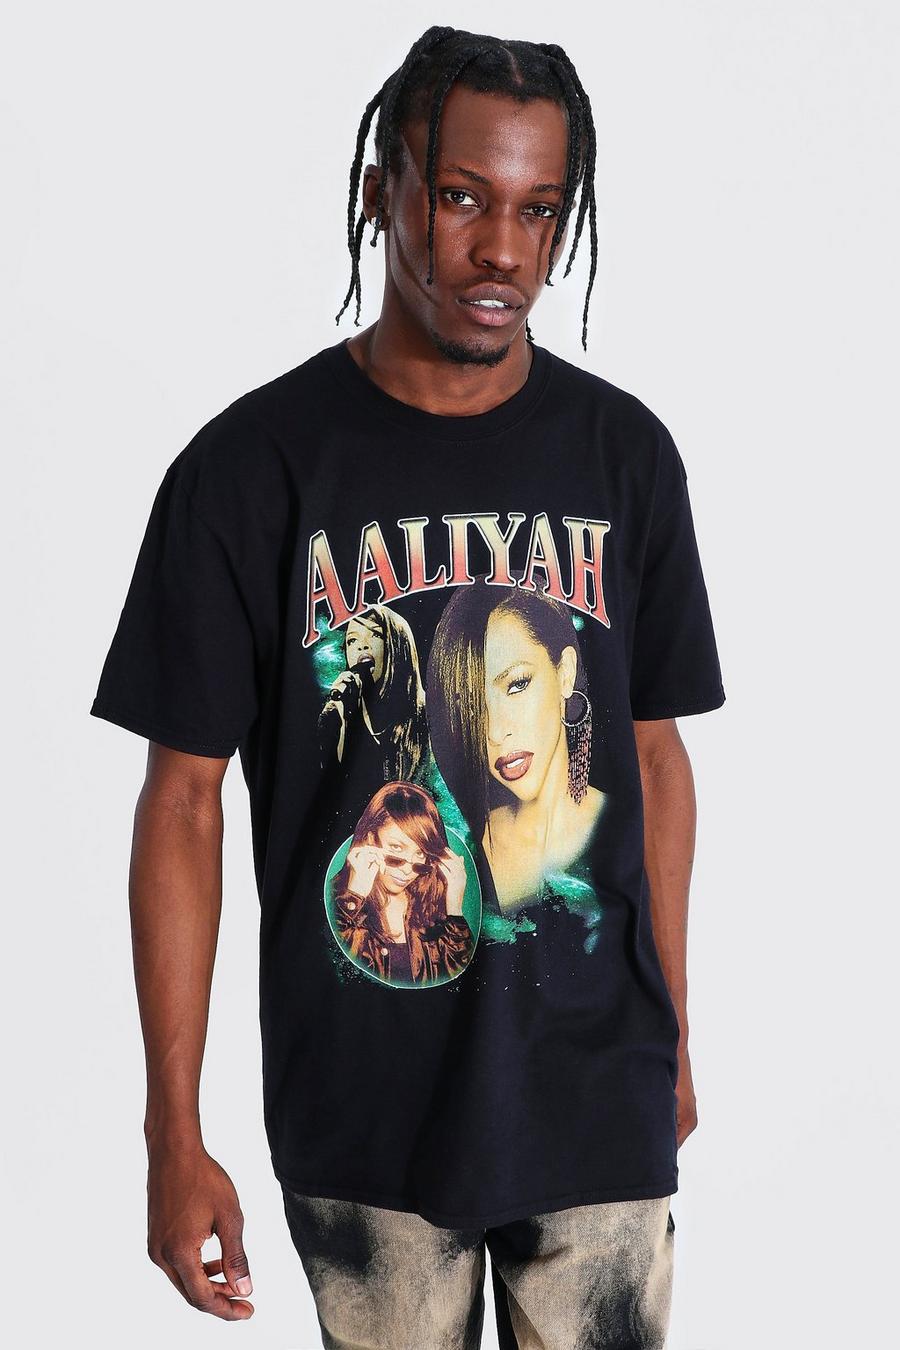 שחור nero טישרט אוברסייז ממותג עם הדפס הומאז' Aaliyah